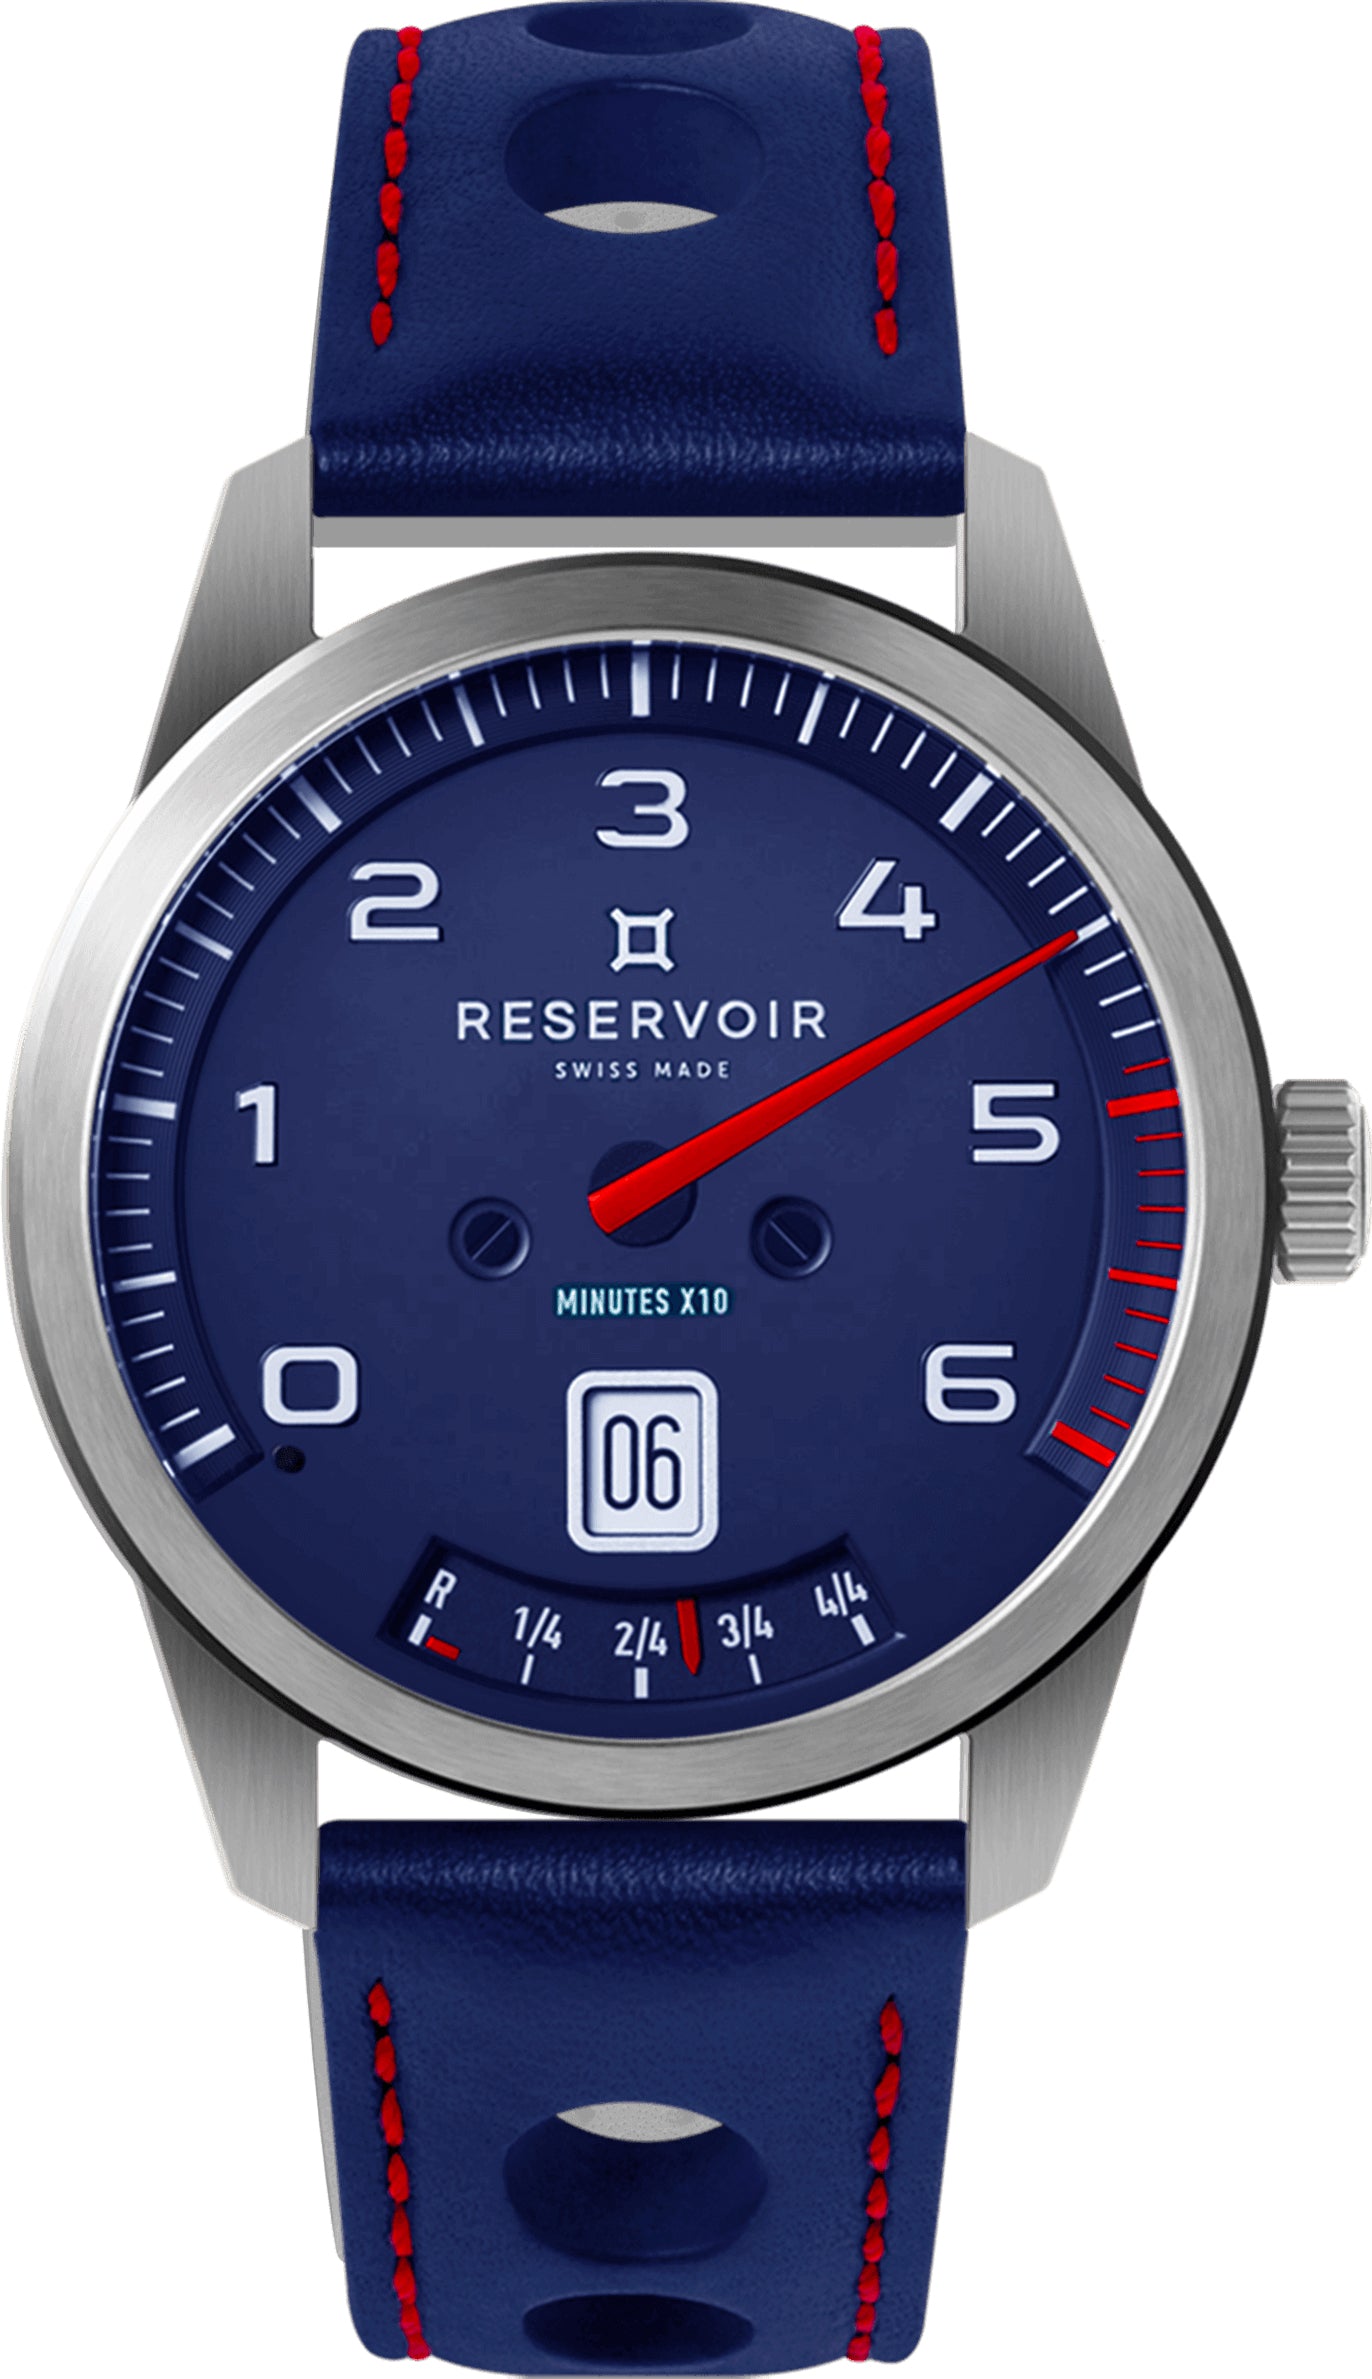 Photos - Wrist Watch GT Reservoir Watch  Tour Blue Edition RSV-043 